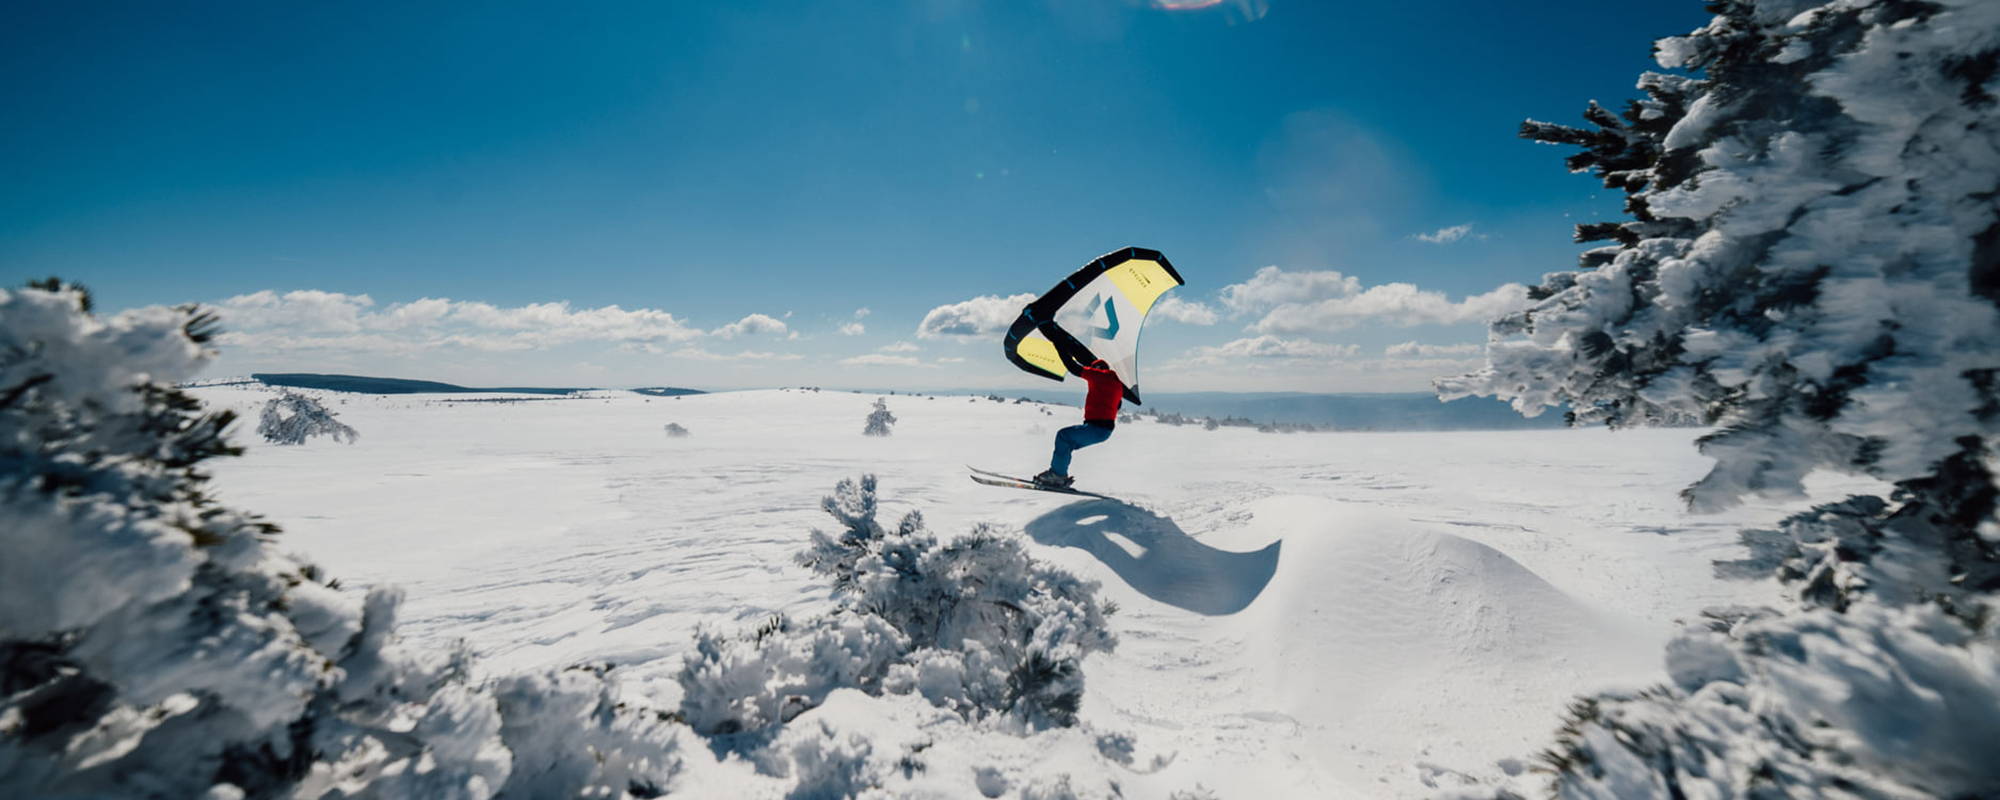 Un homme ride en wingsnow avec ses skis sur un plateau montagneux enneigée et vallonné .